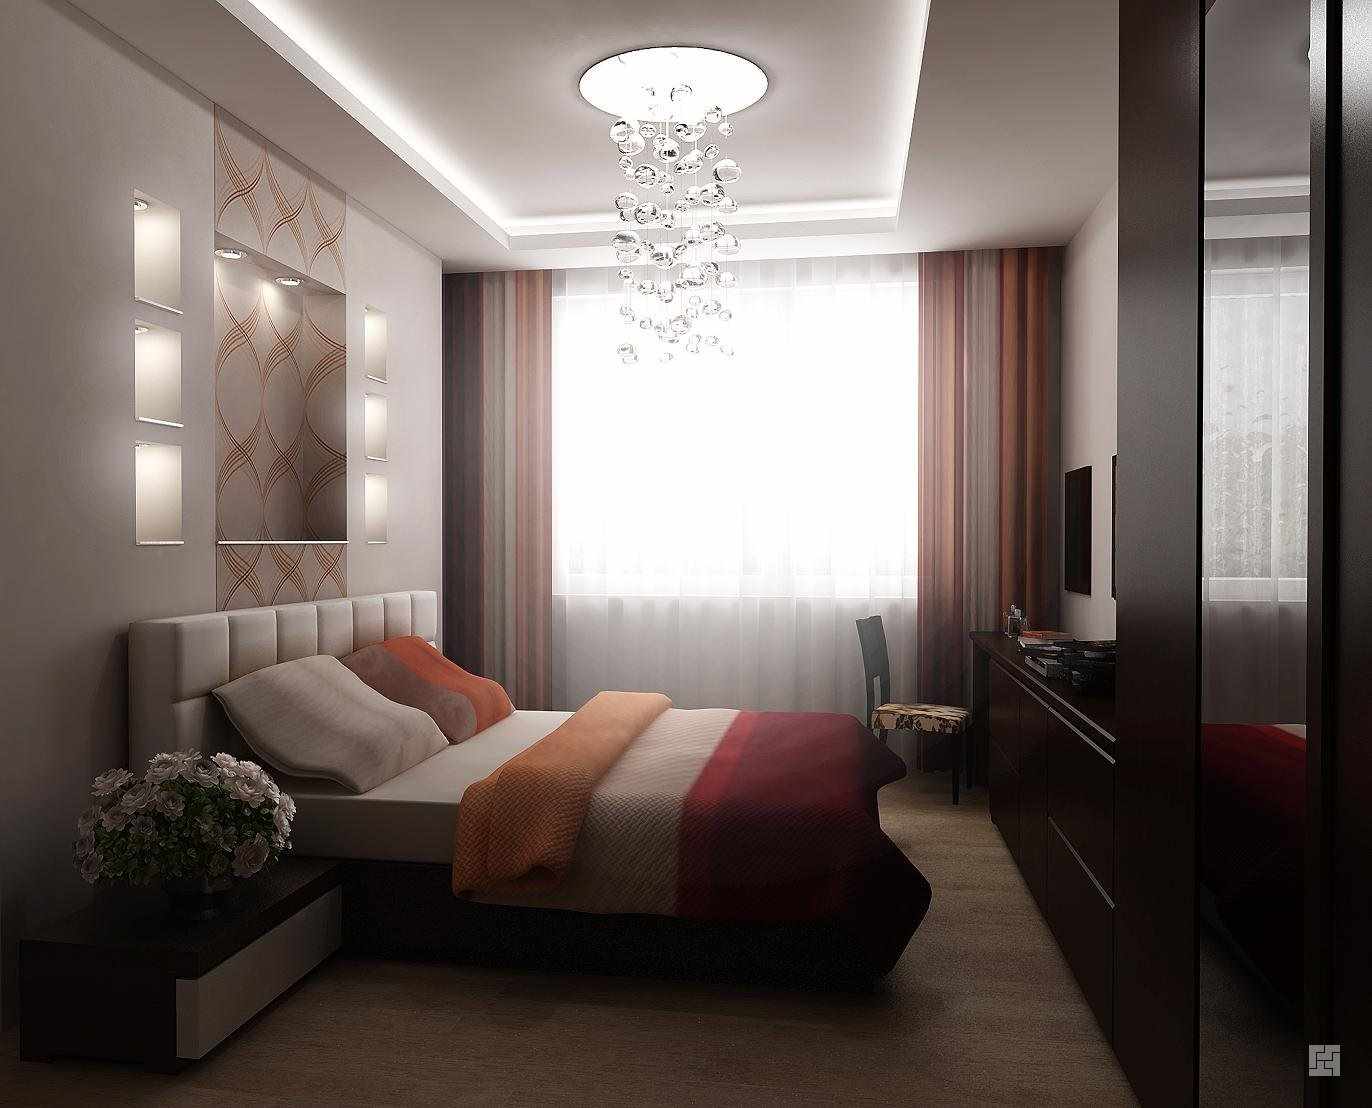 Un exemple du style léger d'une chambre étroite